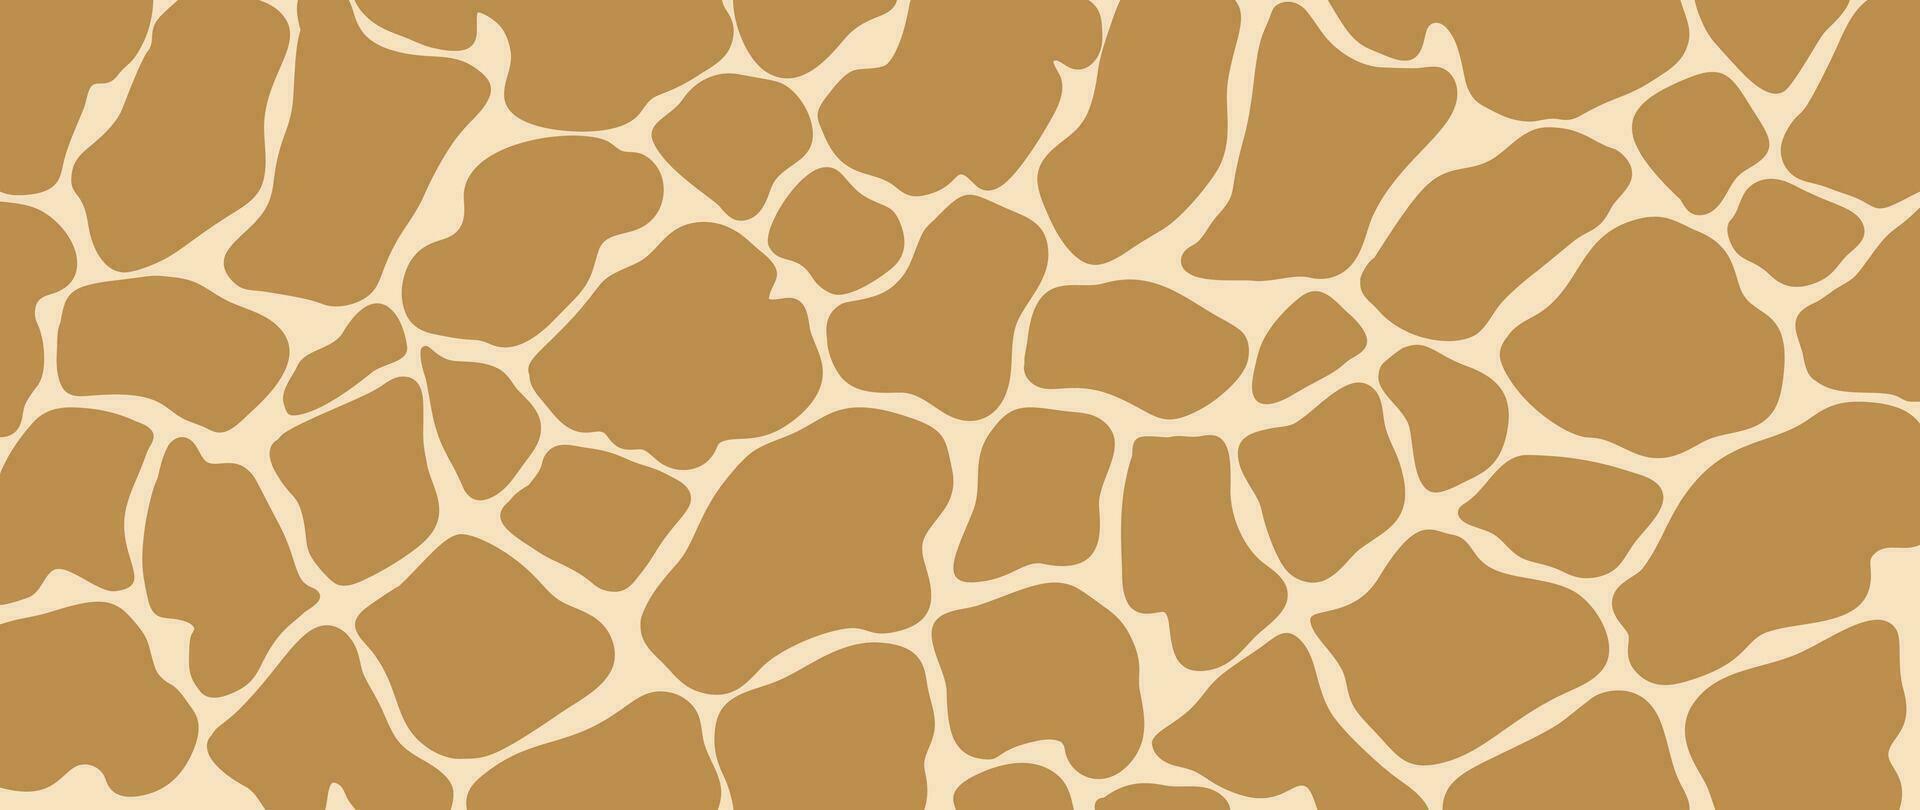 abstrakt giraff hud mönster bakgrund. abstrakt konst bakgrund vektor design med djur- hud, klotter. kreativ illustration för tyg, grafik, omslag, omslag papper, textil, tapet.